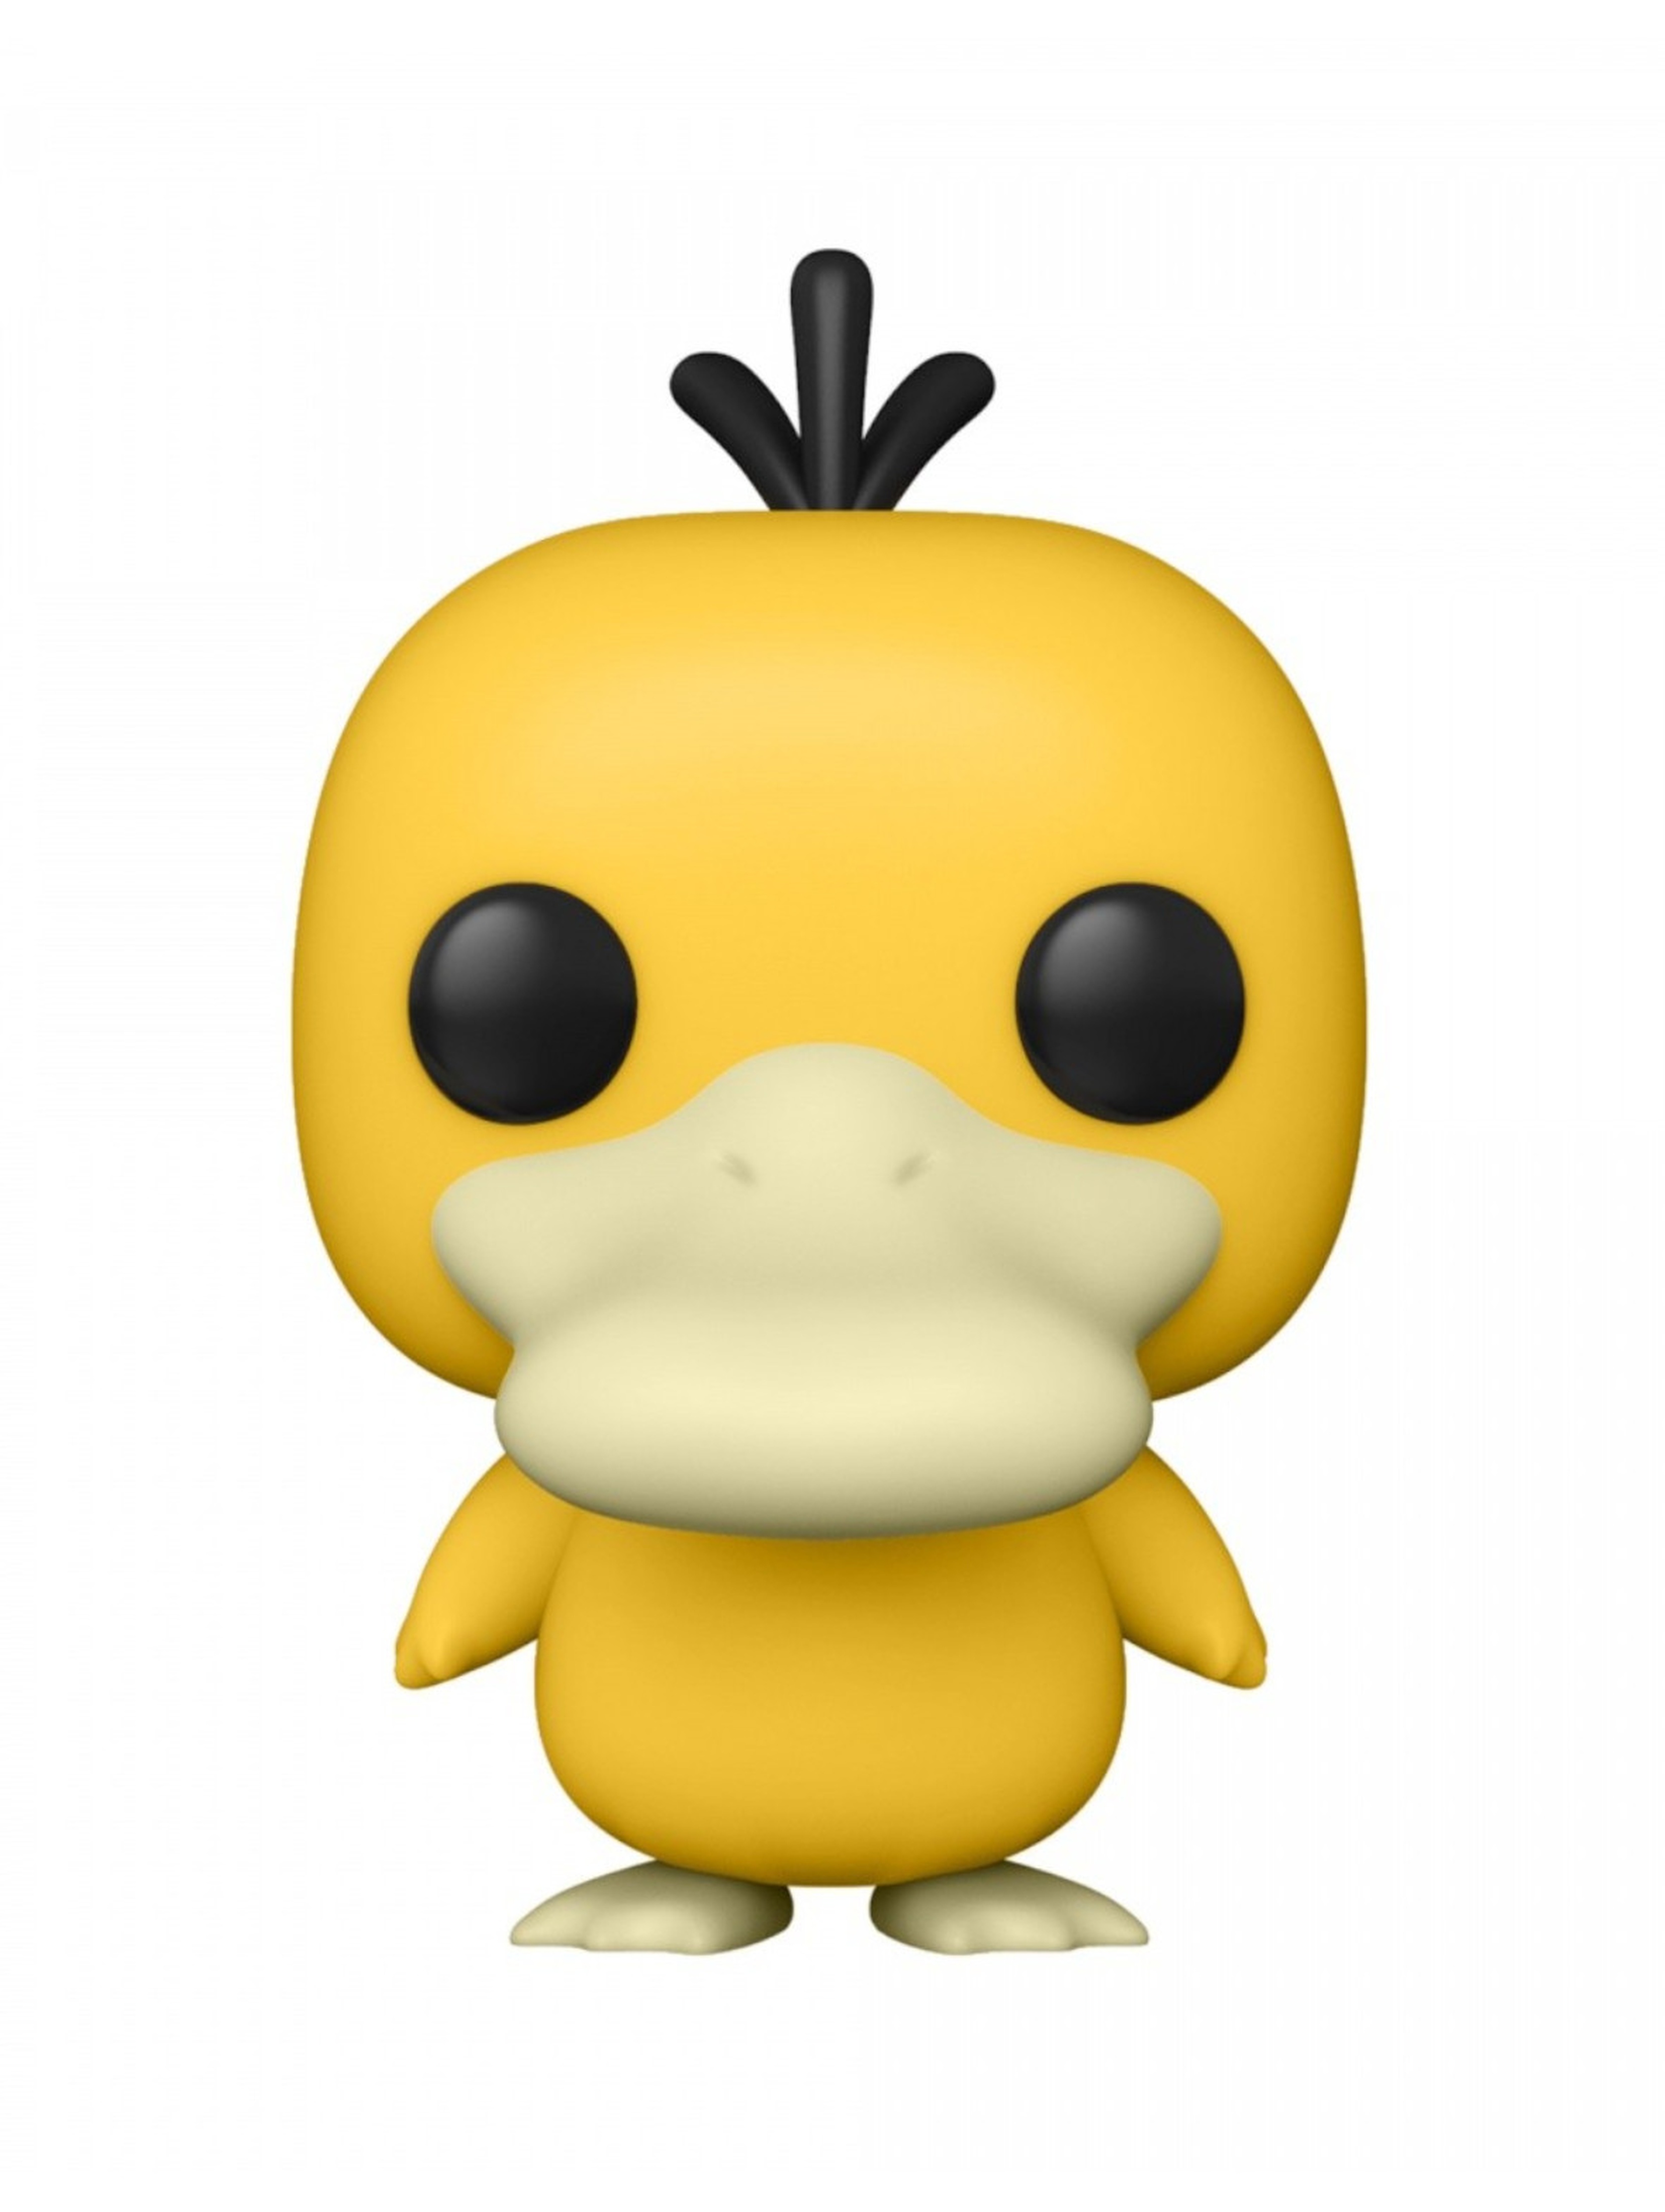 Figurka Funko Pop Games Pokemon - Psyduck (EMEA)